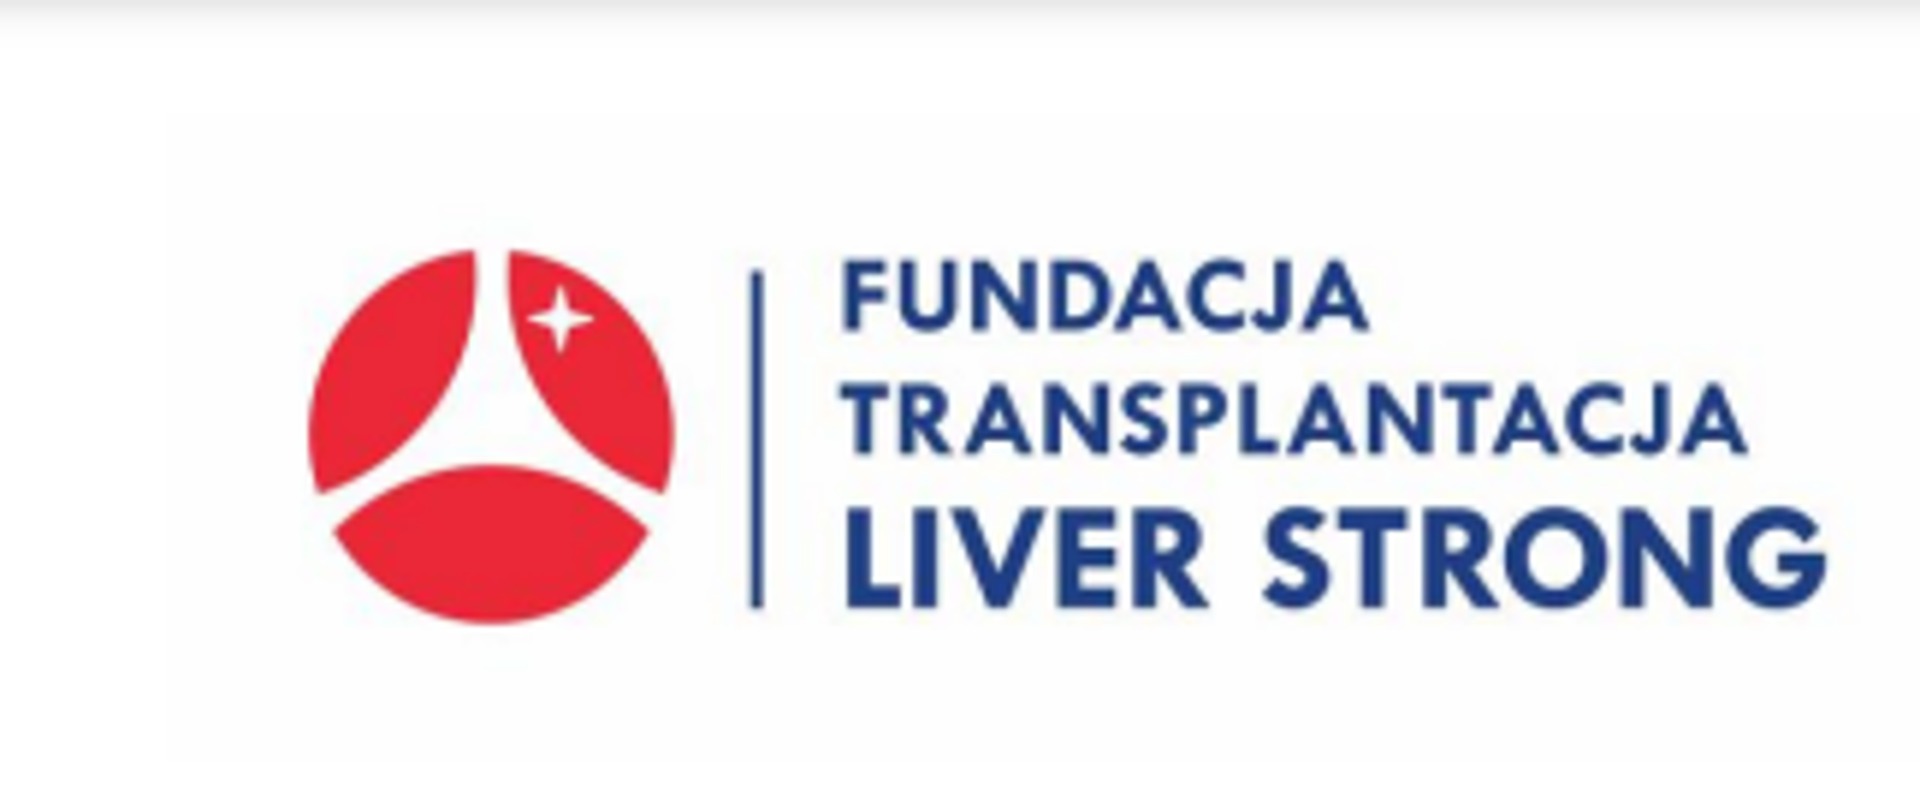 Fundacja transplantacja